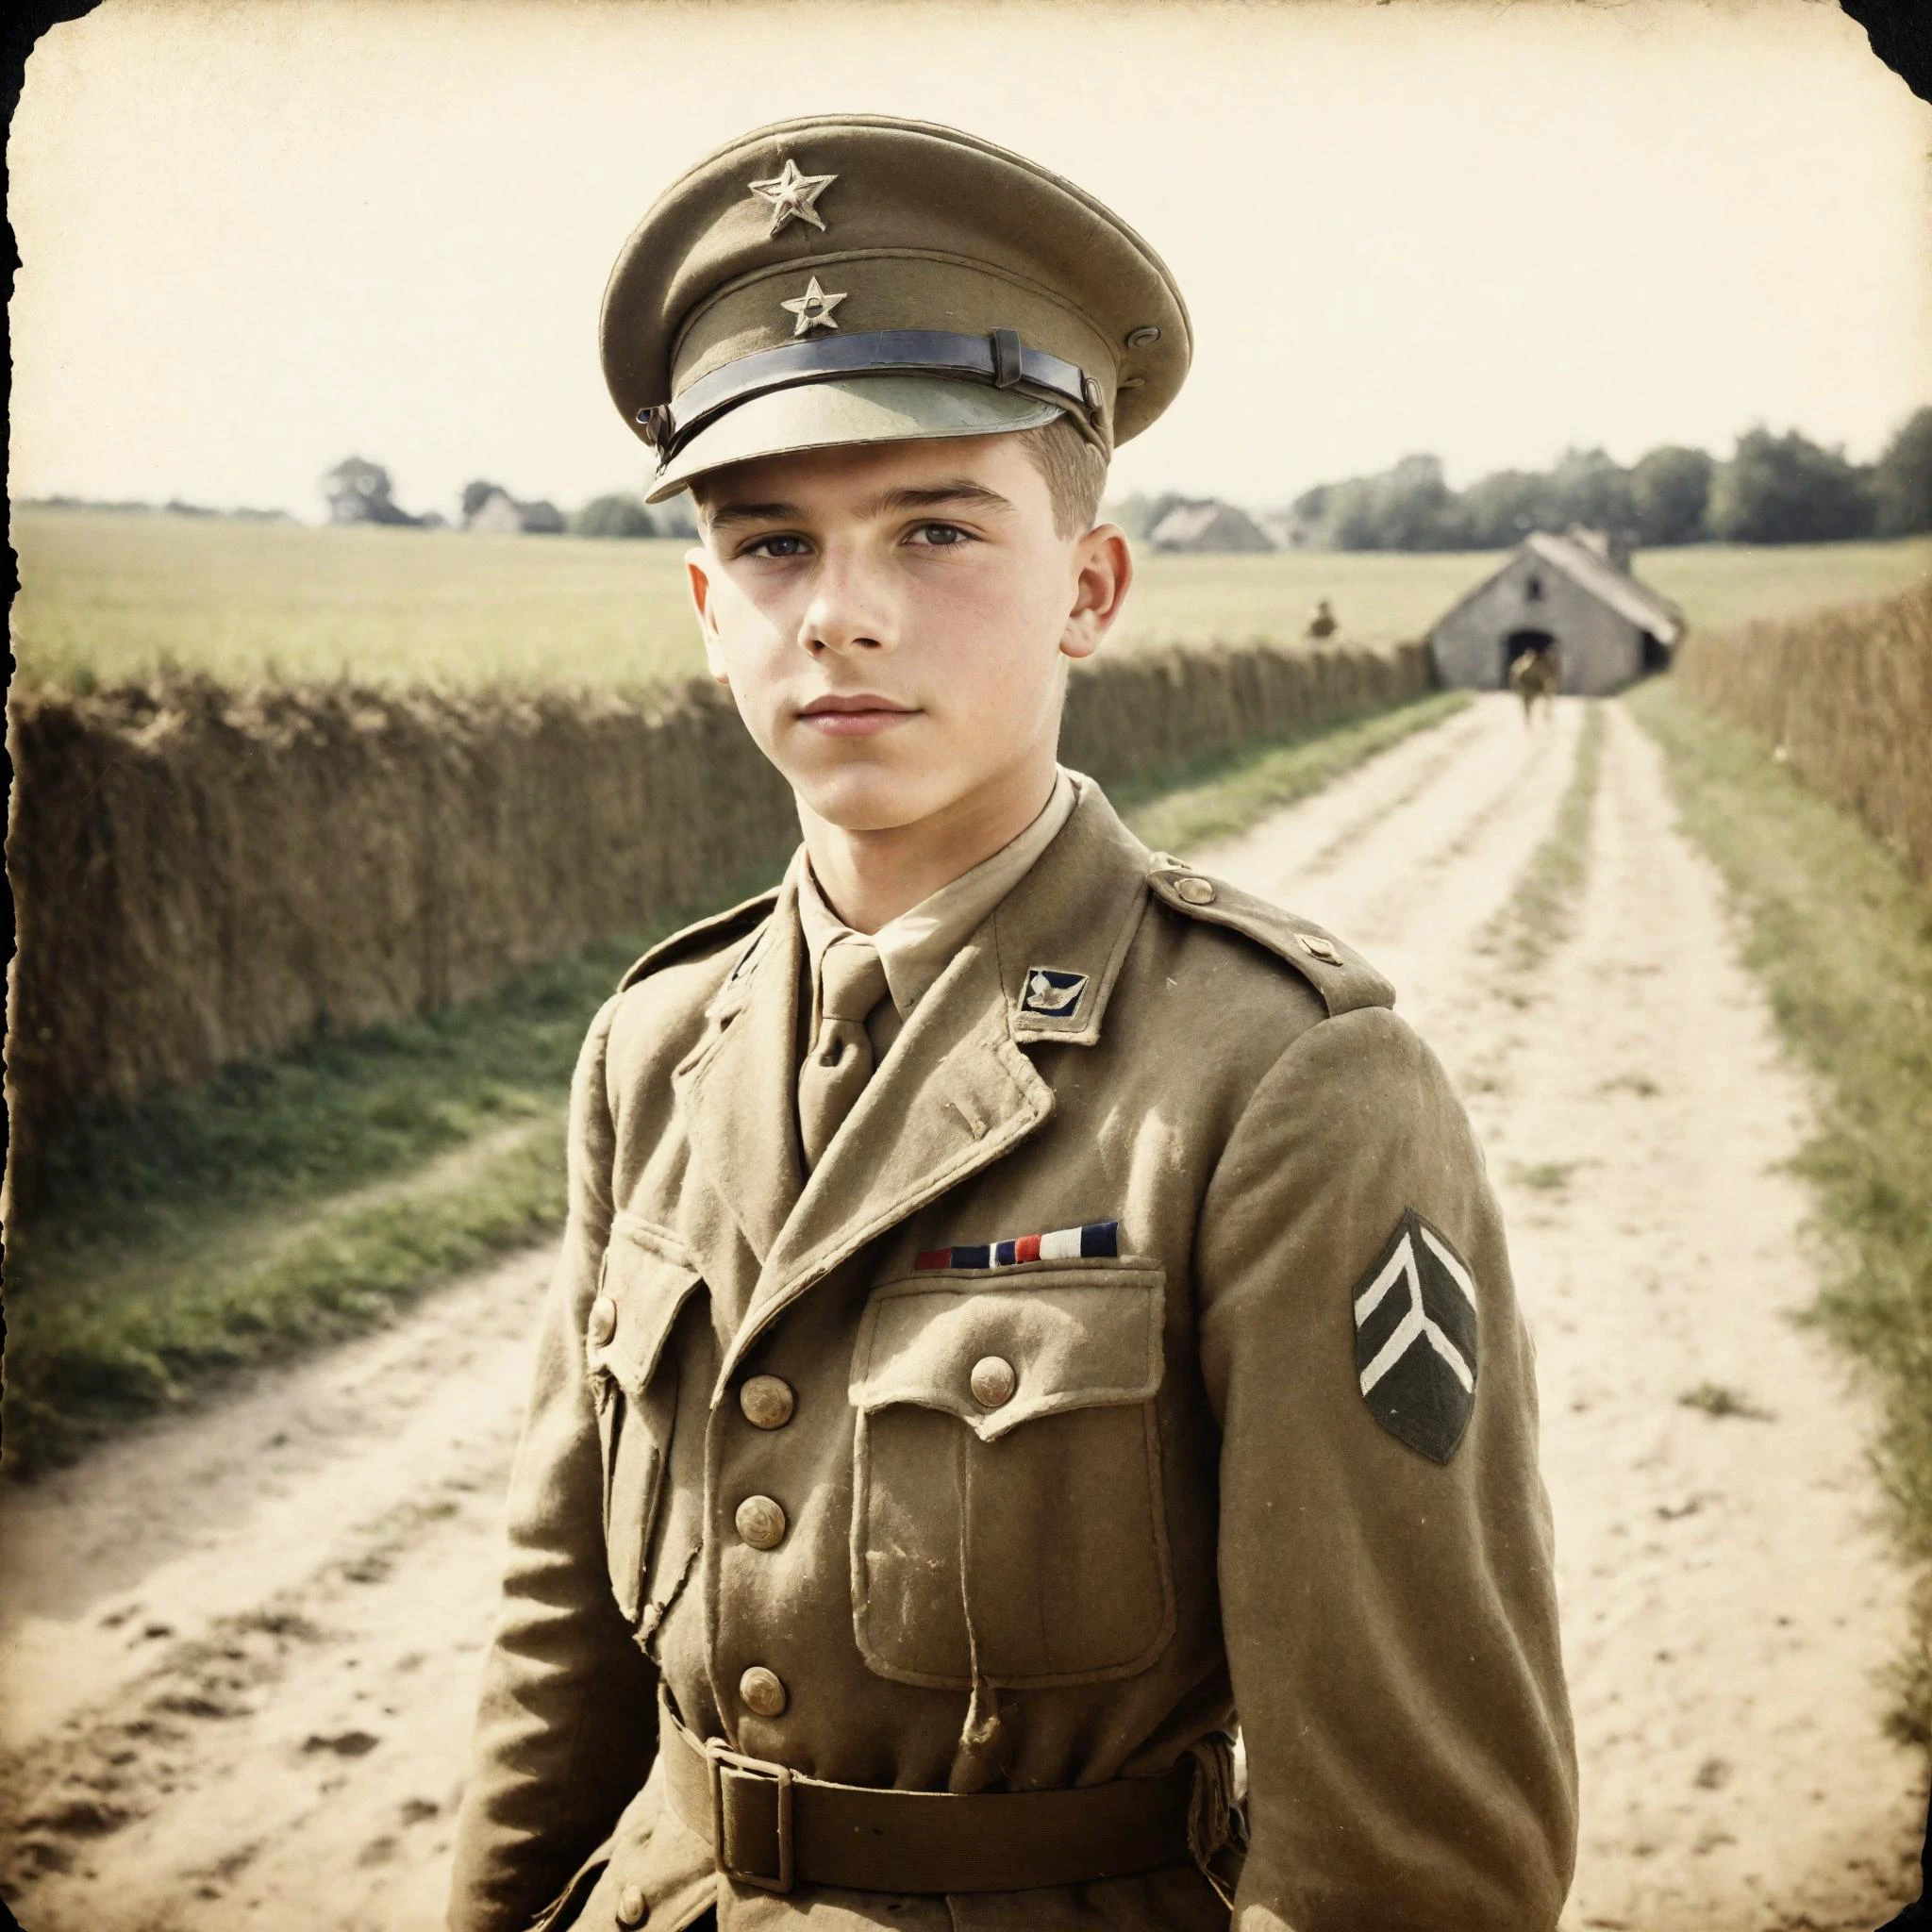 Foto antigua de un soldado adolescente en la Segunda Guerra Mundial., Normandía, vestido con ropa de infantería americana, luz natural, grano de la película, bordes en dificultades, viñeta